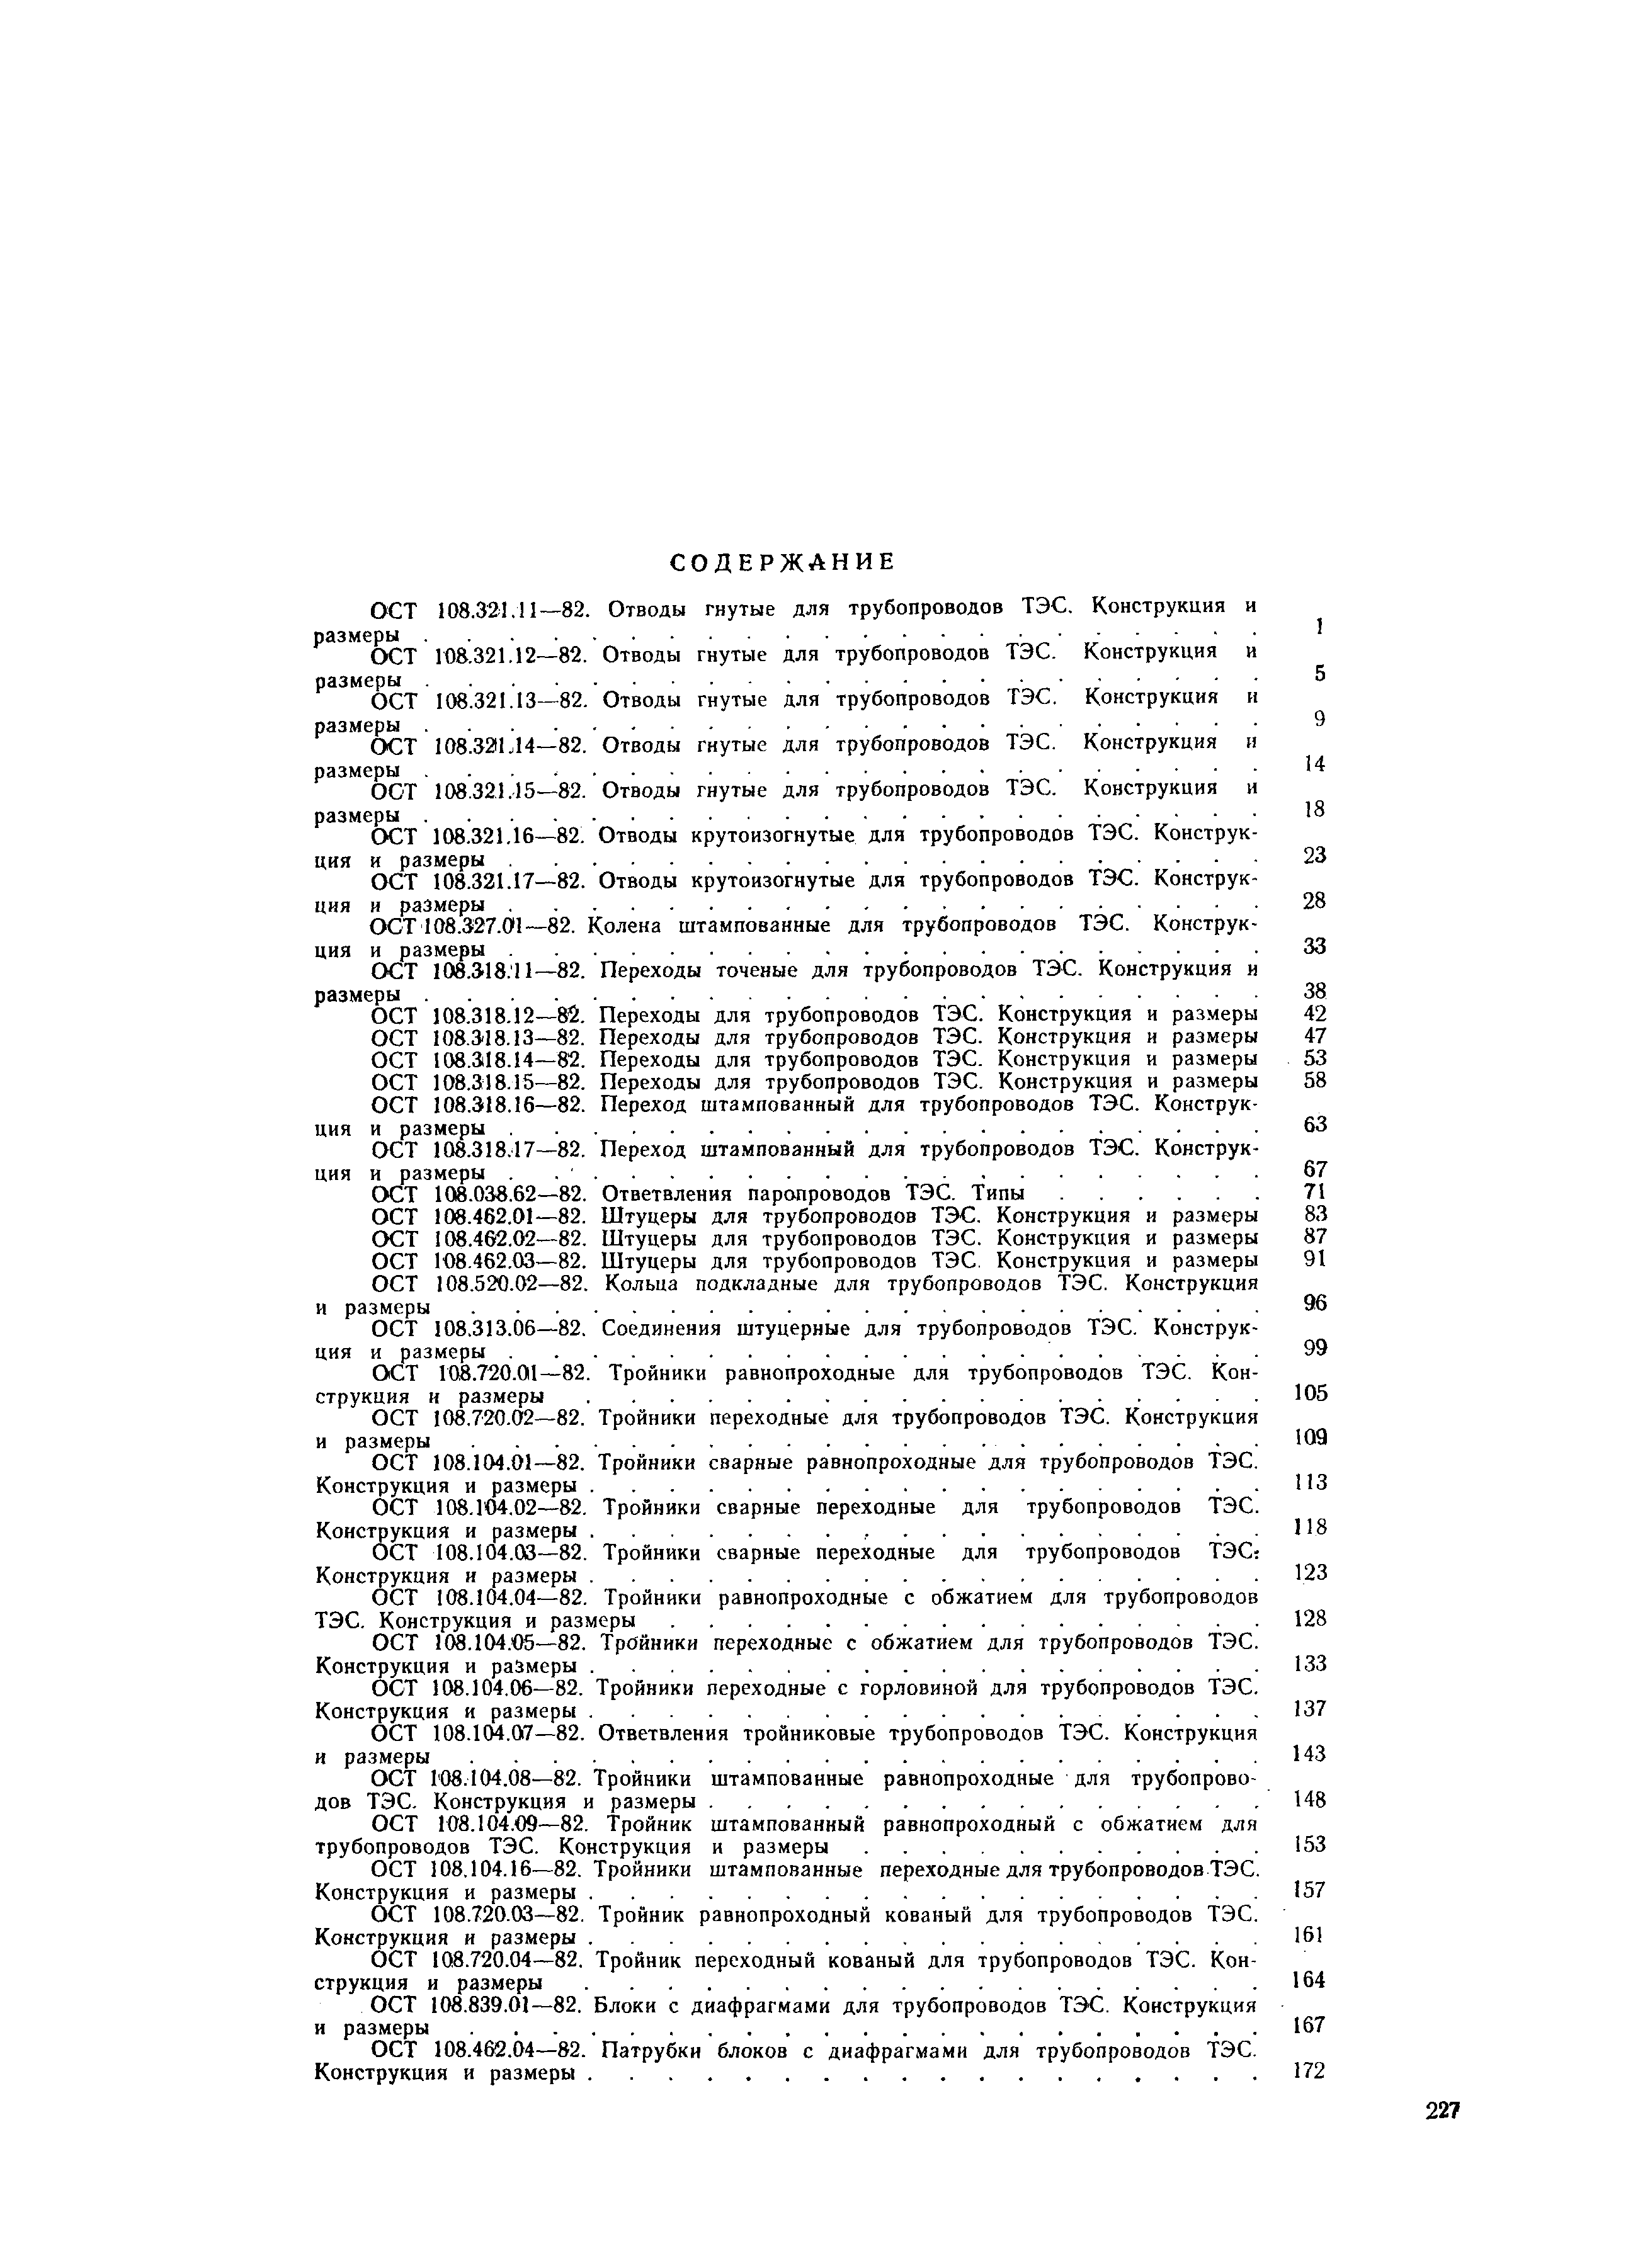 ОСТ 108.104.09-82